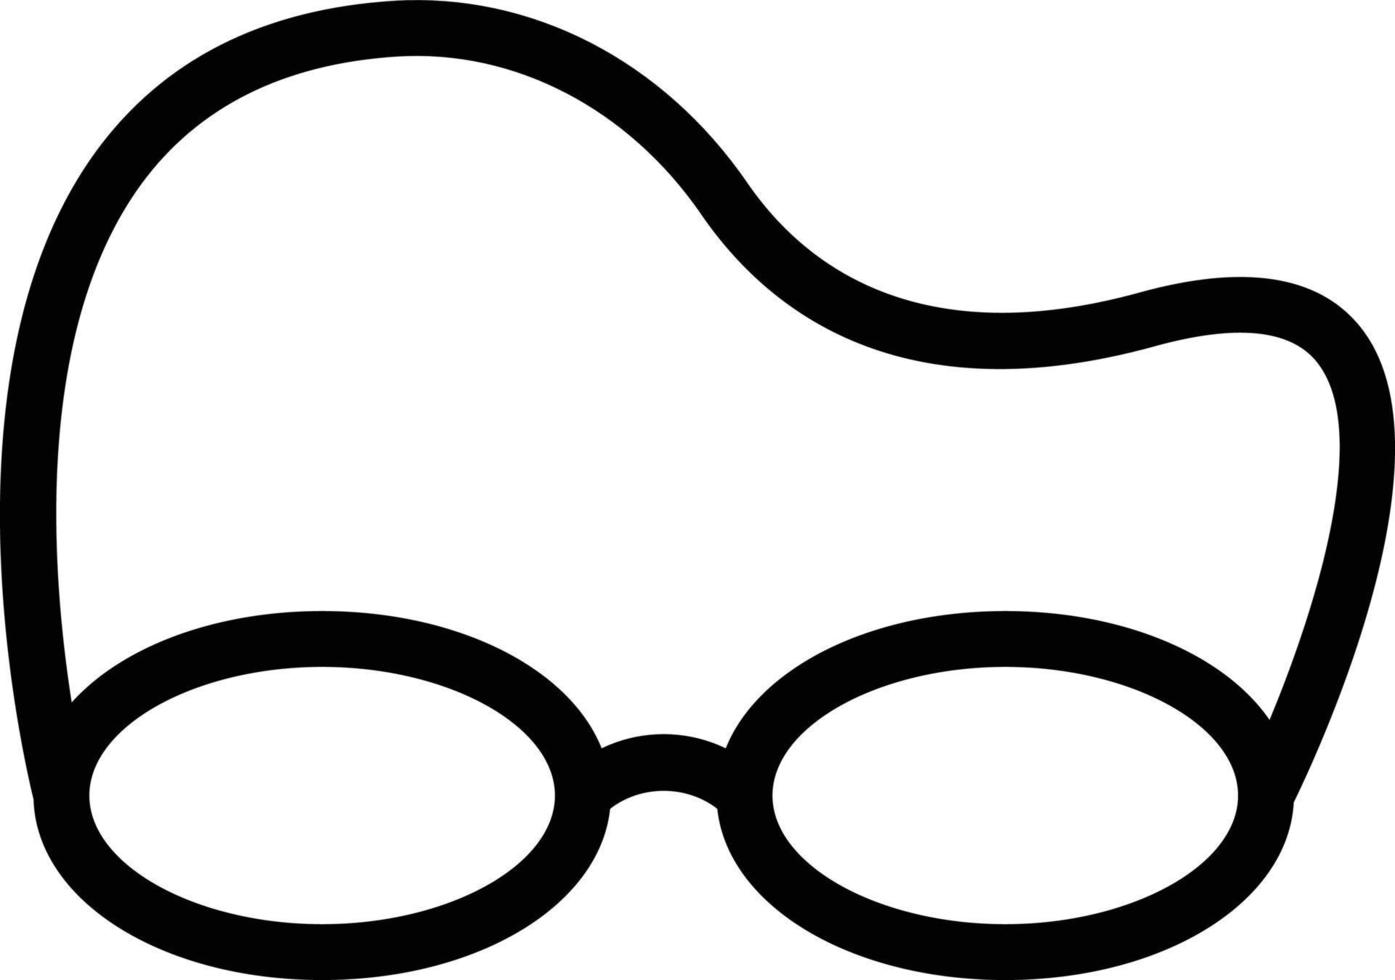 brillenvektorillustration auf einem hintergrund. hochwertige symbole. vektorikonen für konzept und grafikdesign. vektor